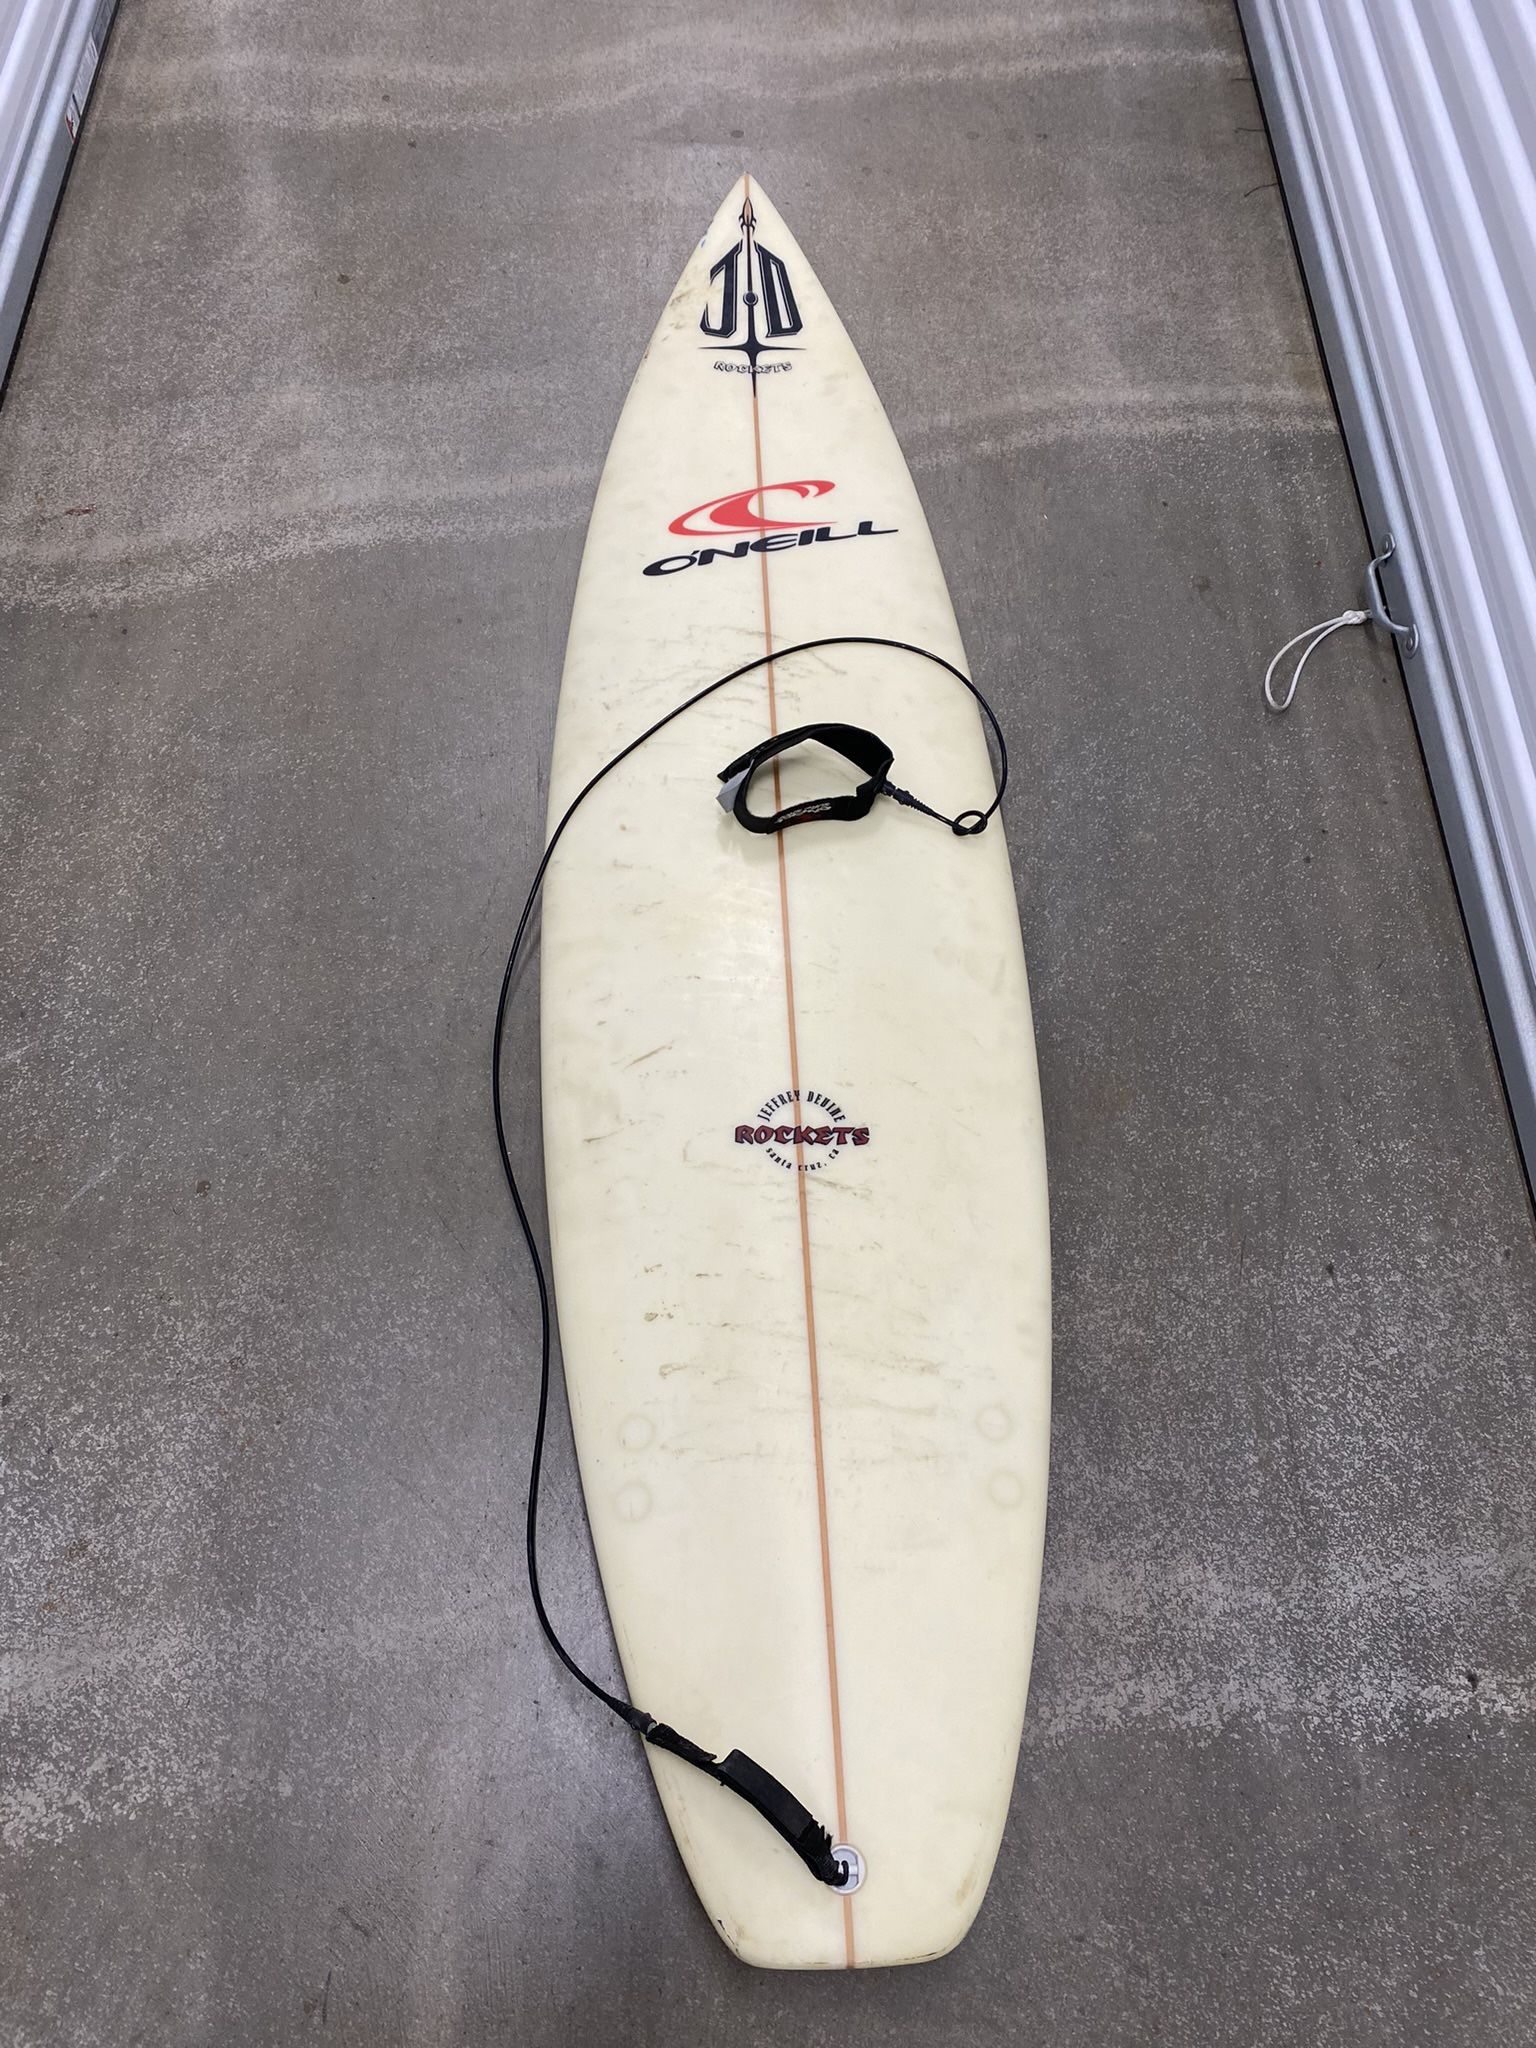 JD Rockets Surfboard O’Neill Surfing Surf Board 6’8